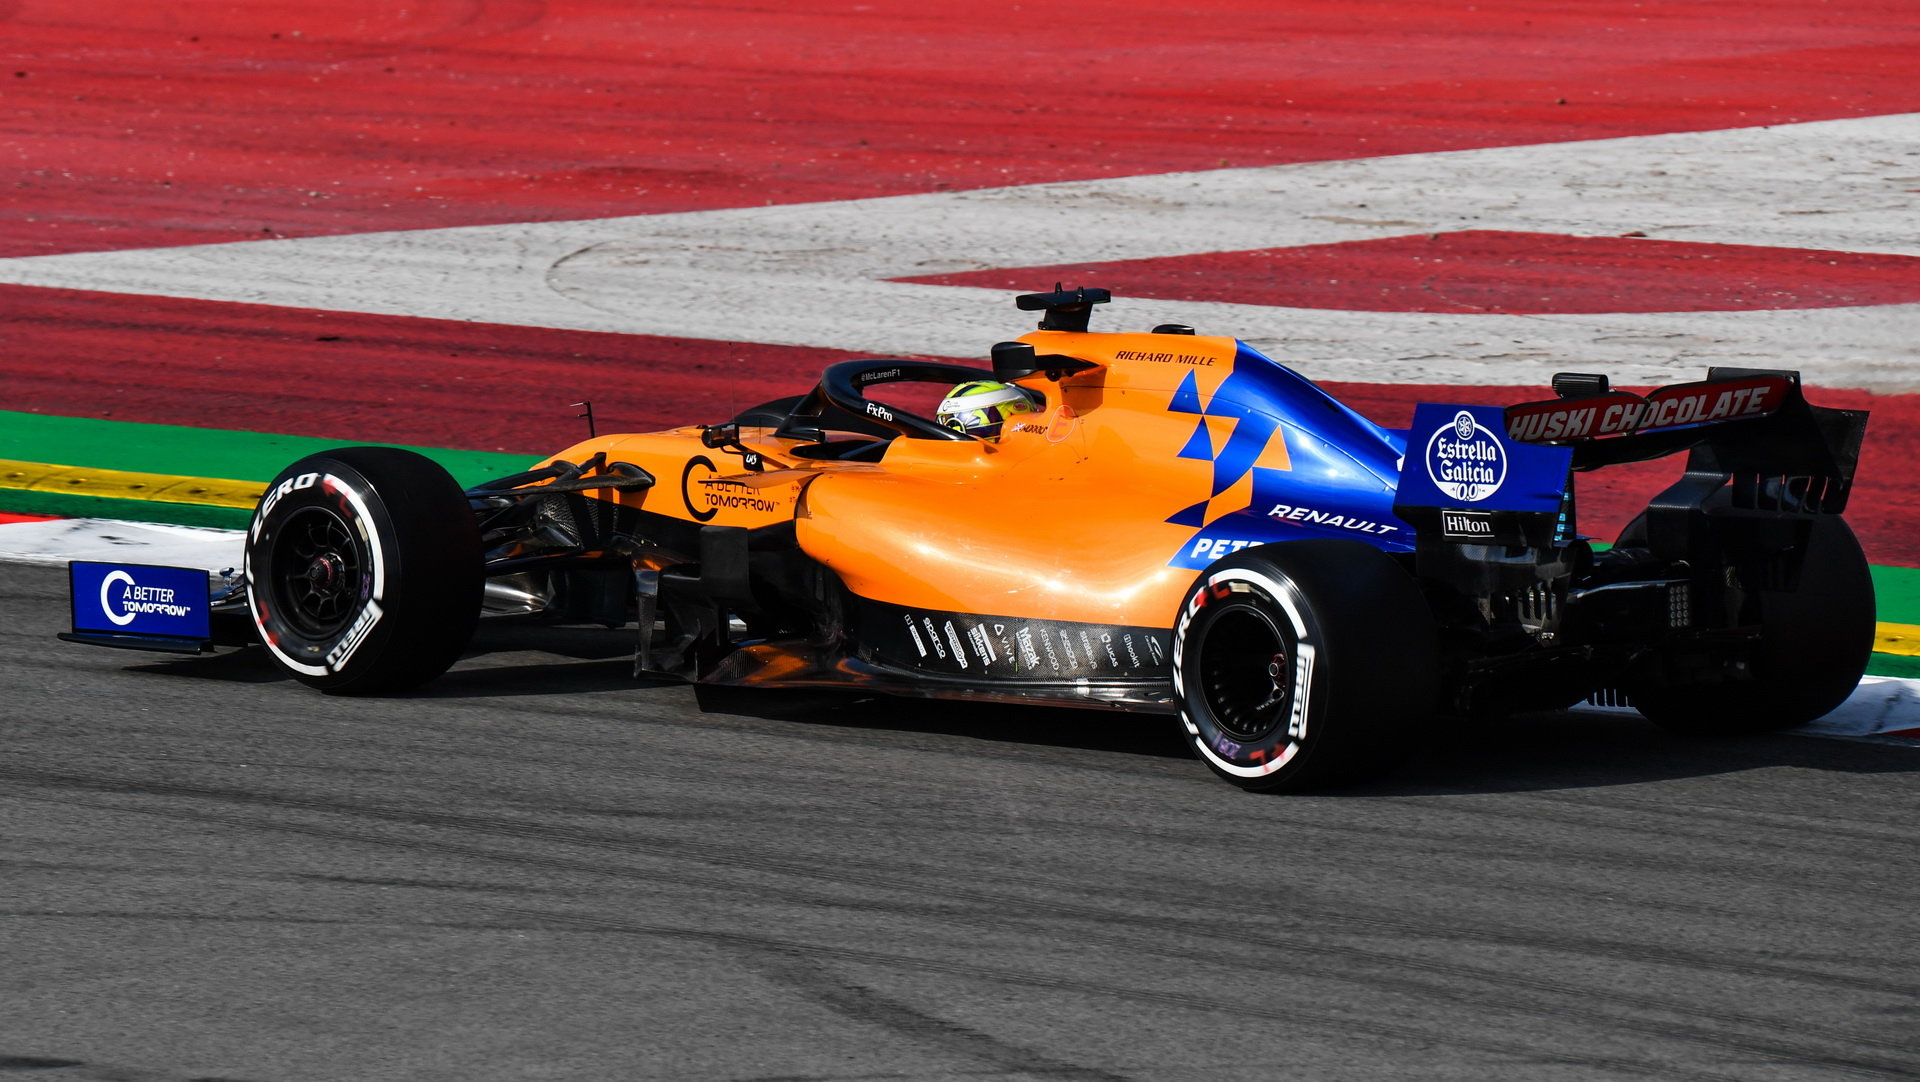 Lando Norris v novém voze McLaren MCL34 - Renault při druhém dni testů v Barceloně